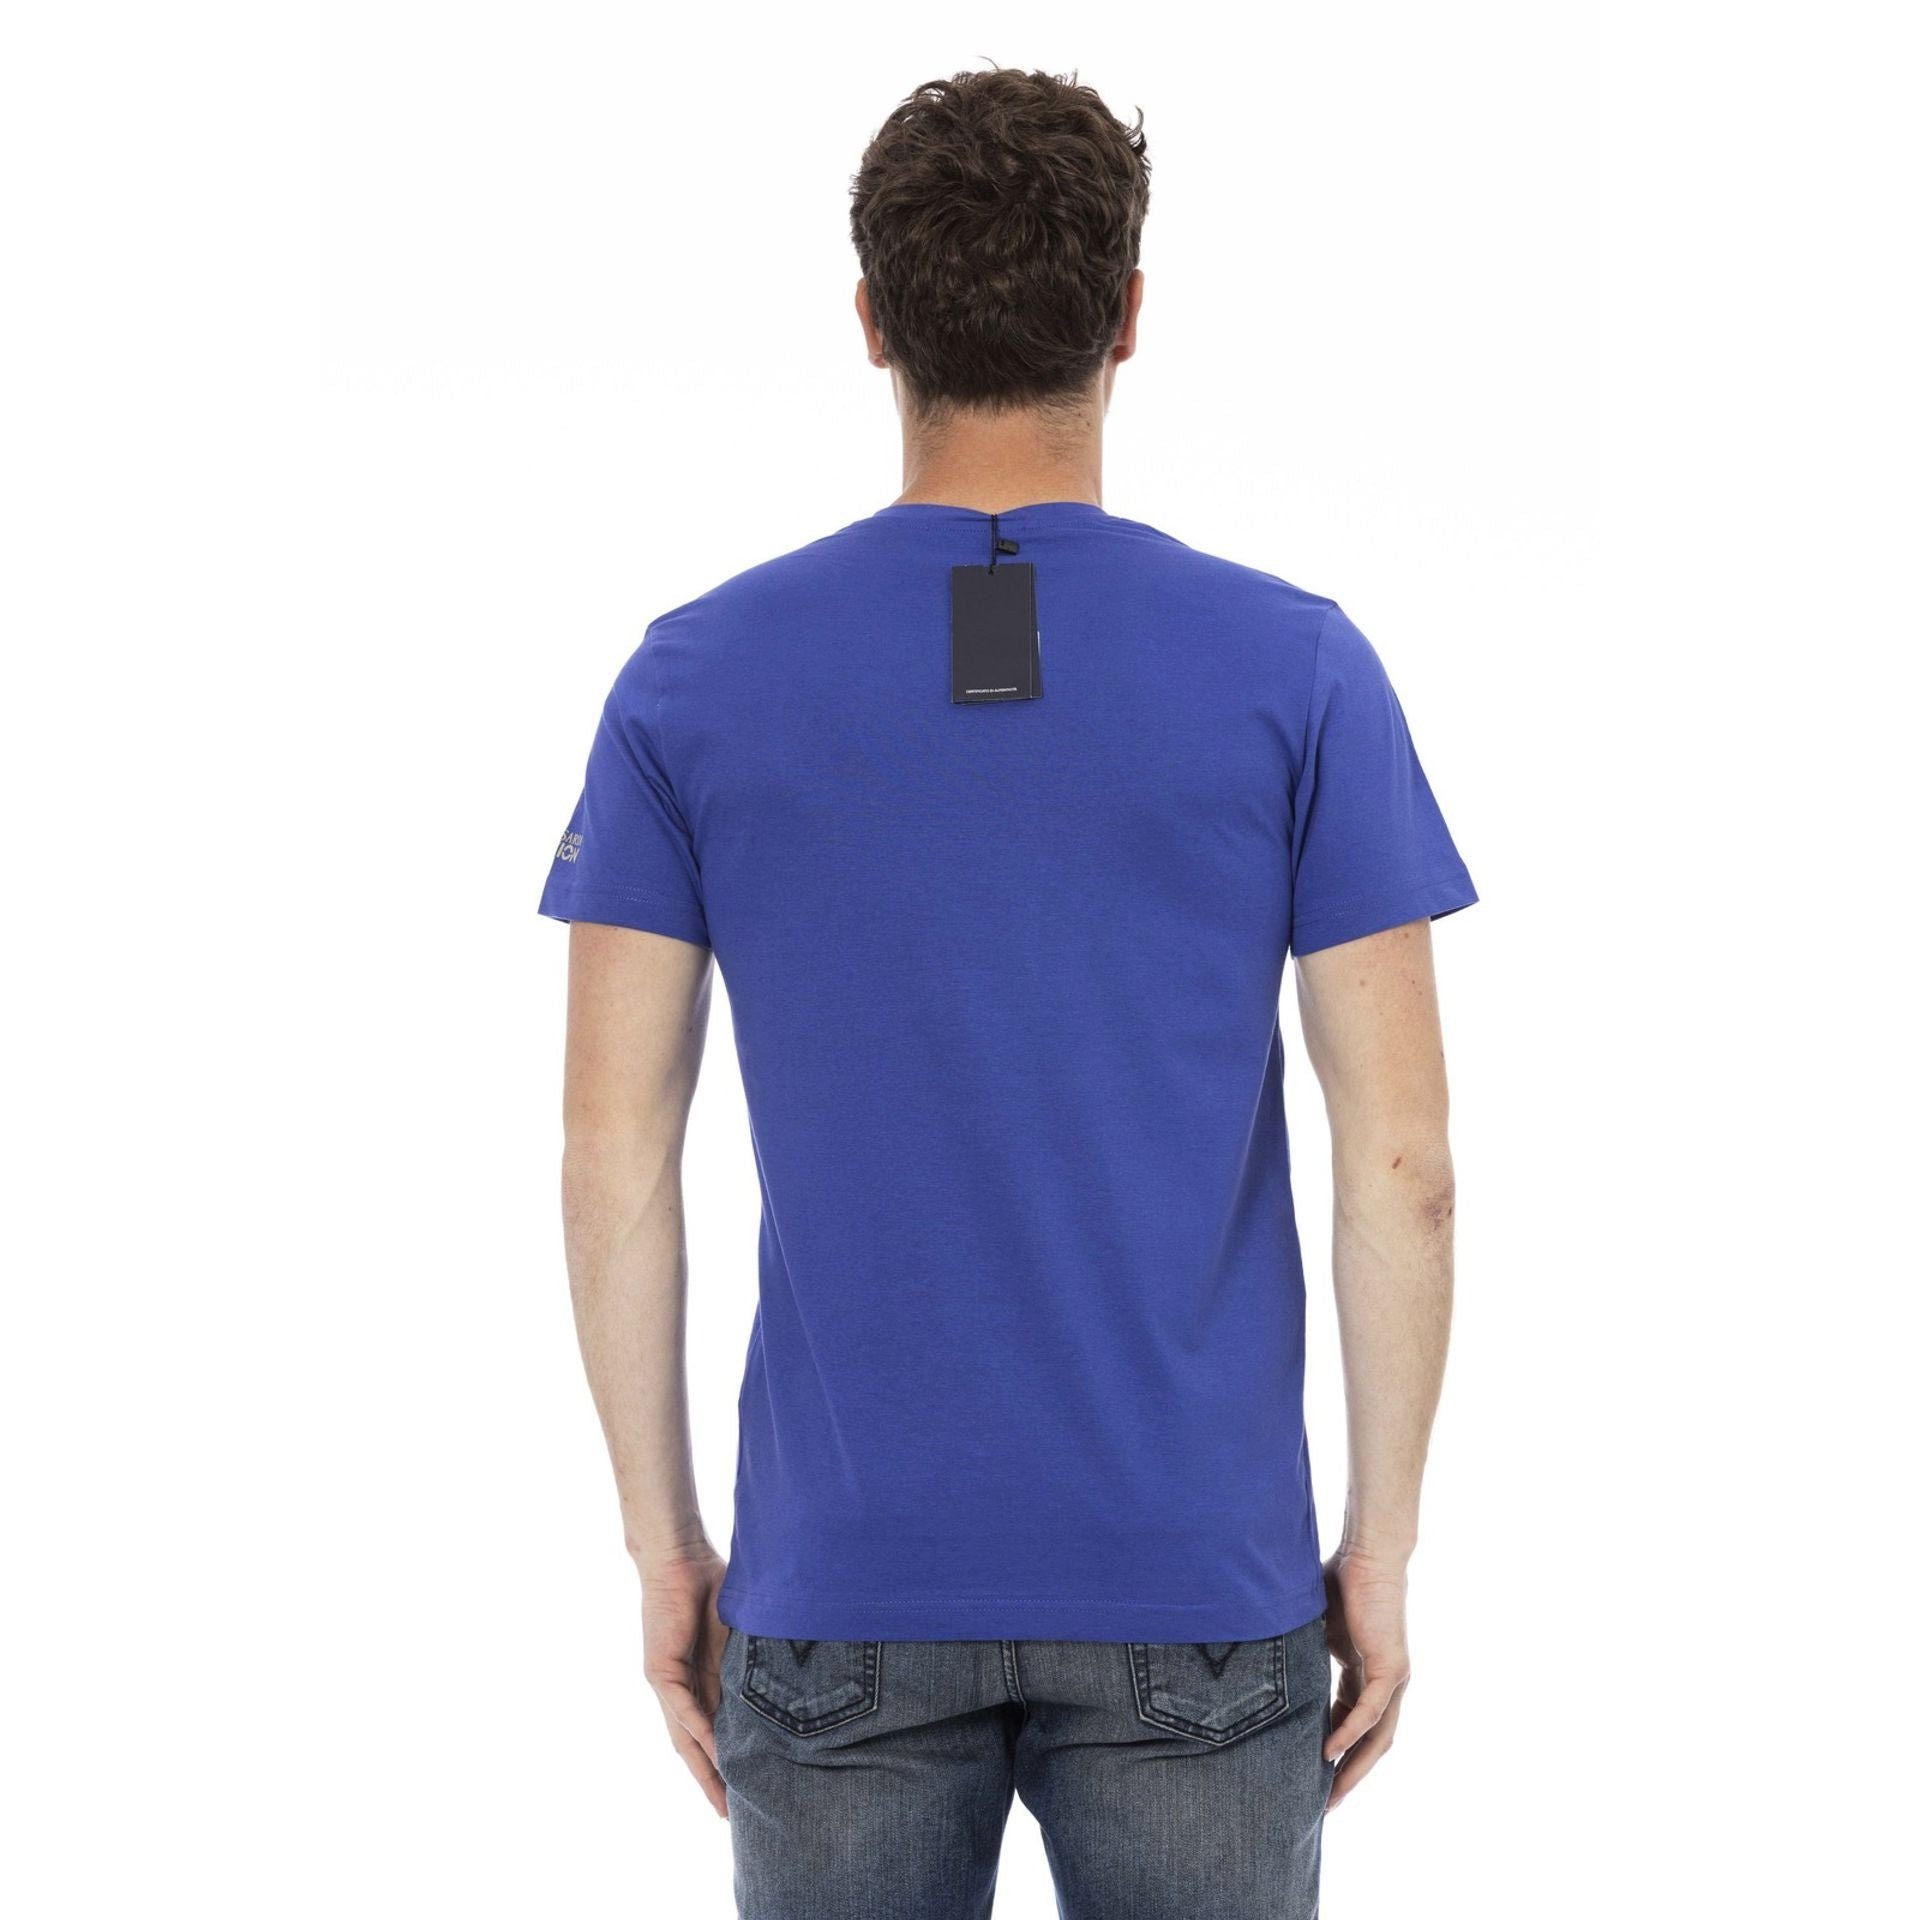 Trussardi T-Shirt Trussardi Action T-Shirts, verleiht eine durch zeichnet Es Logo-Muster aus, aber subtile, stilvolle Blau Note sich das das